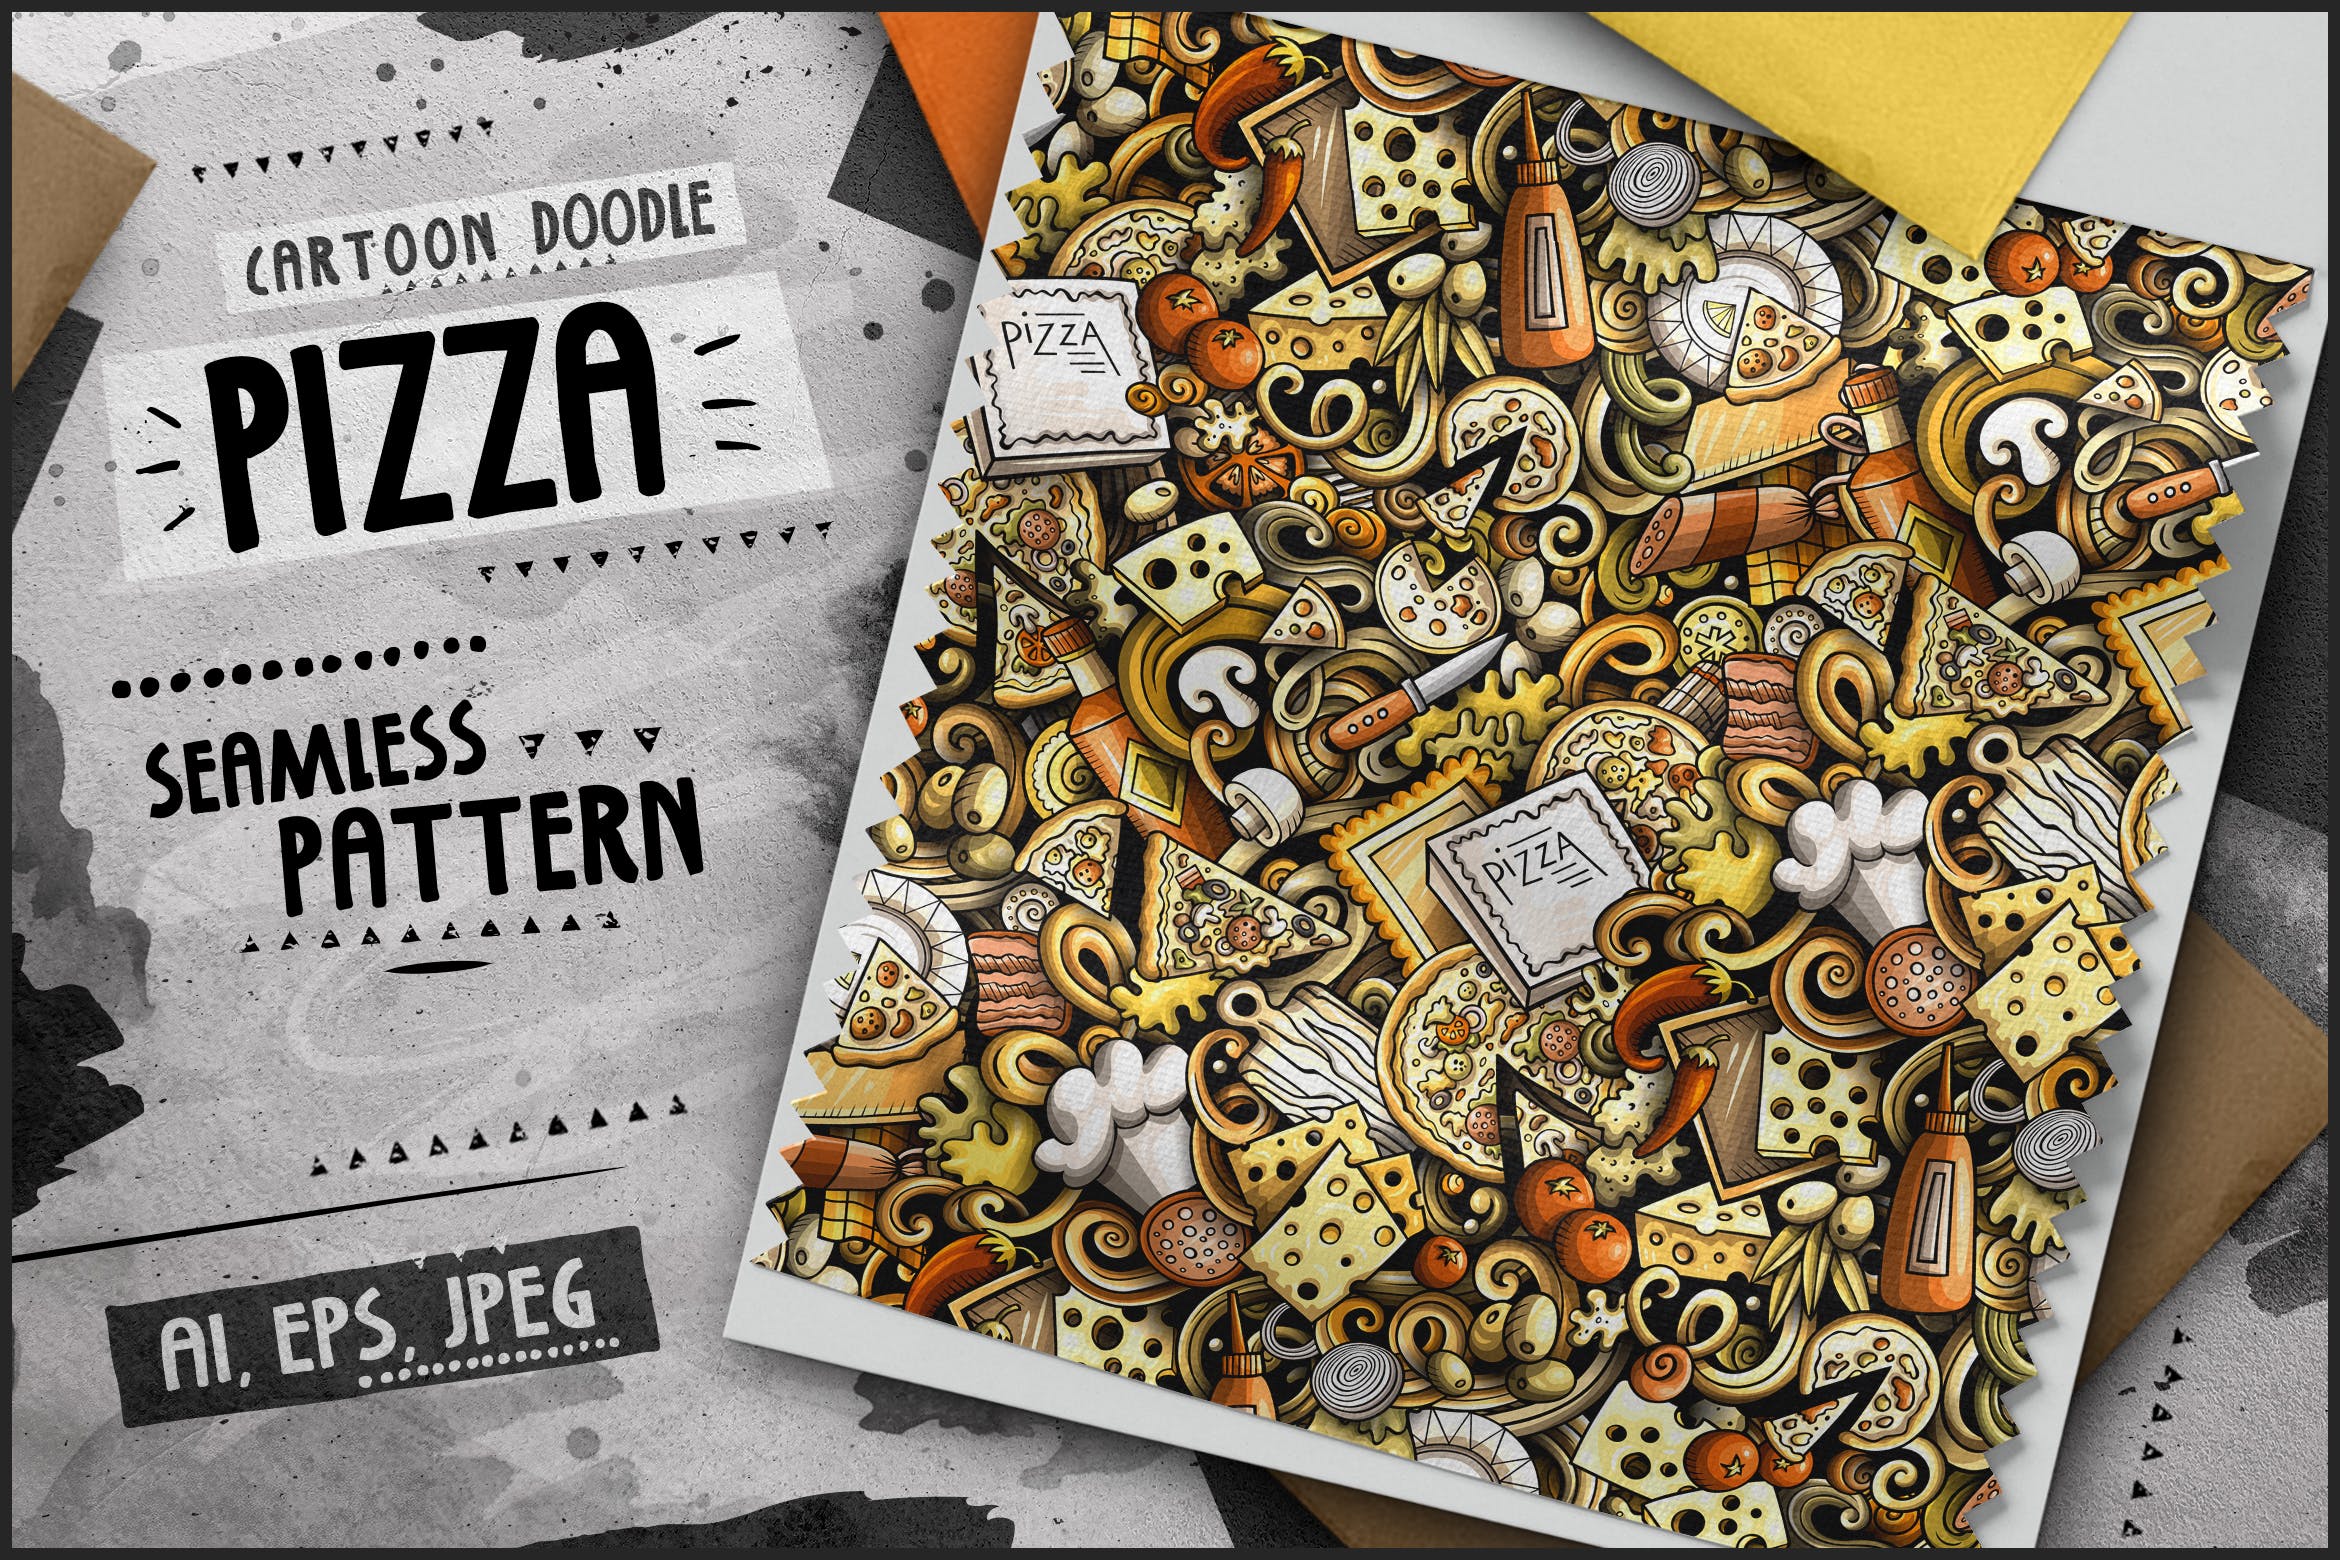 披萨卡通无缝图案素材 Pizza Cartoon Seamless Pattern 图片素材 第1张